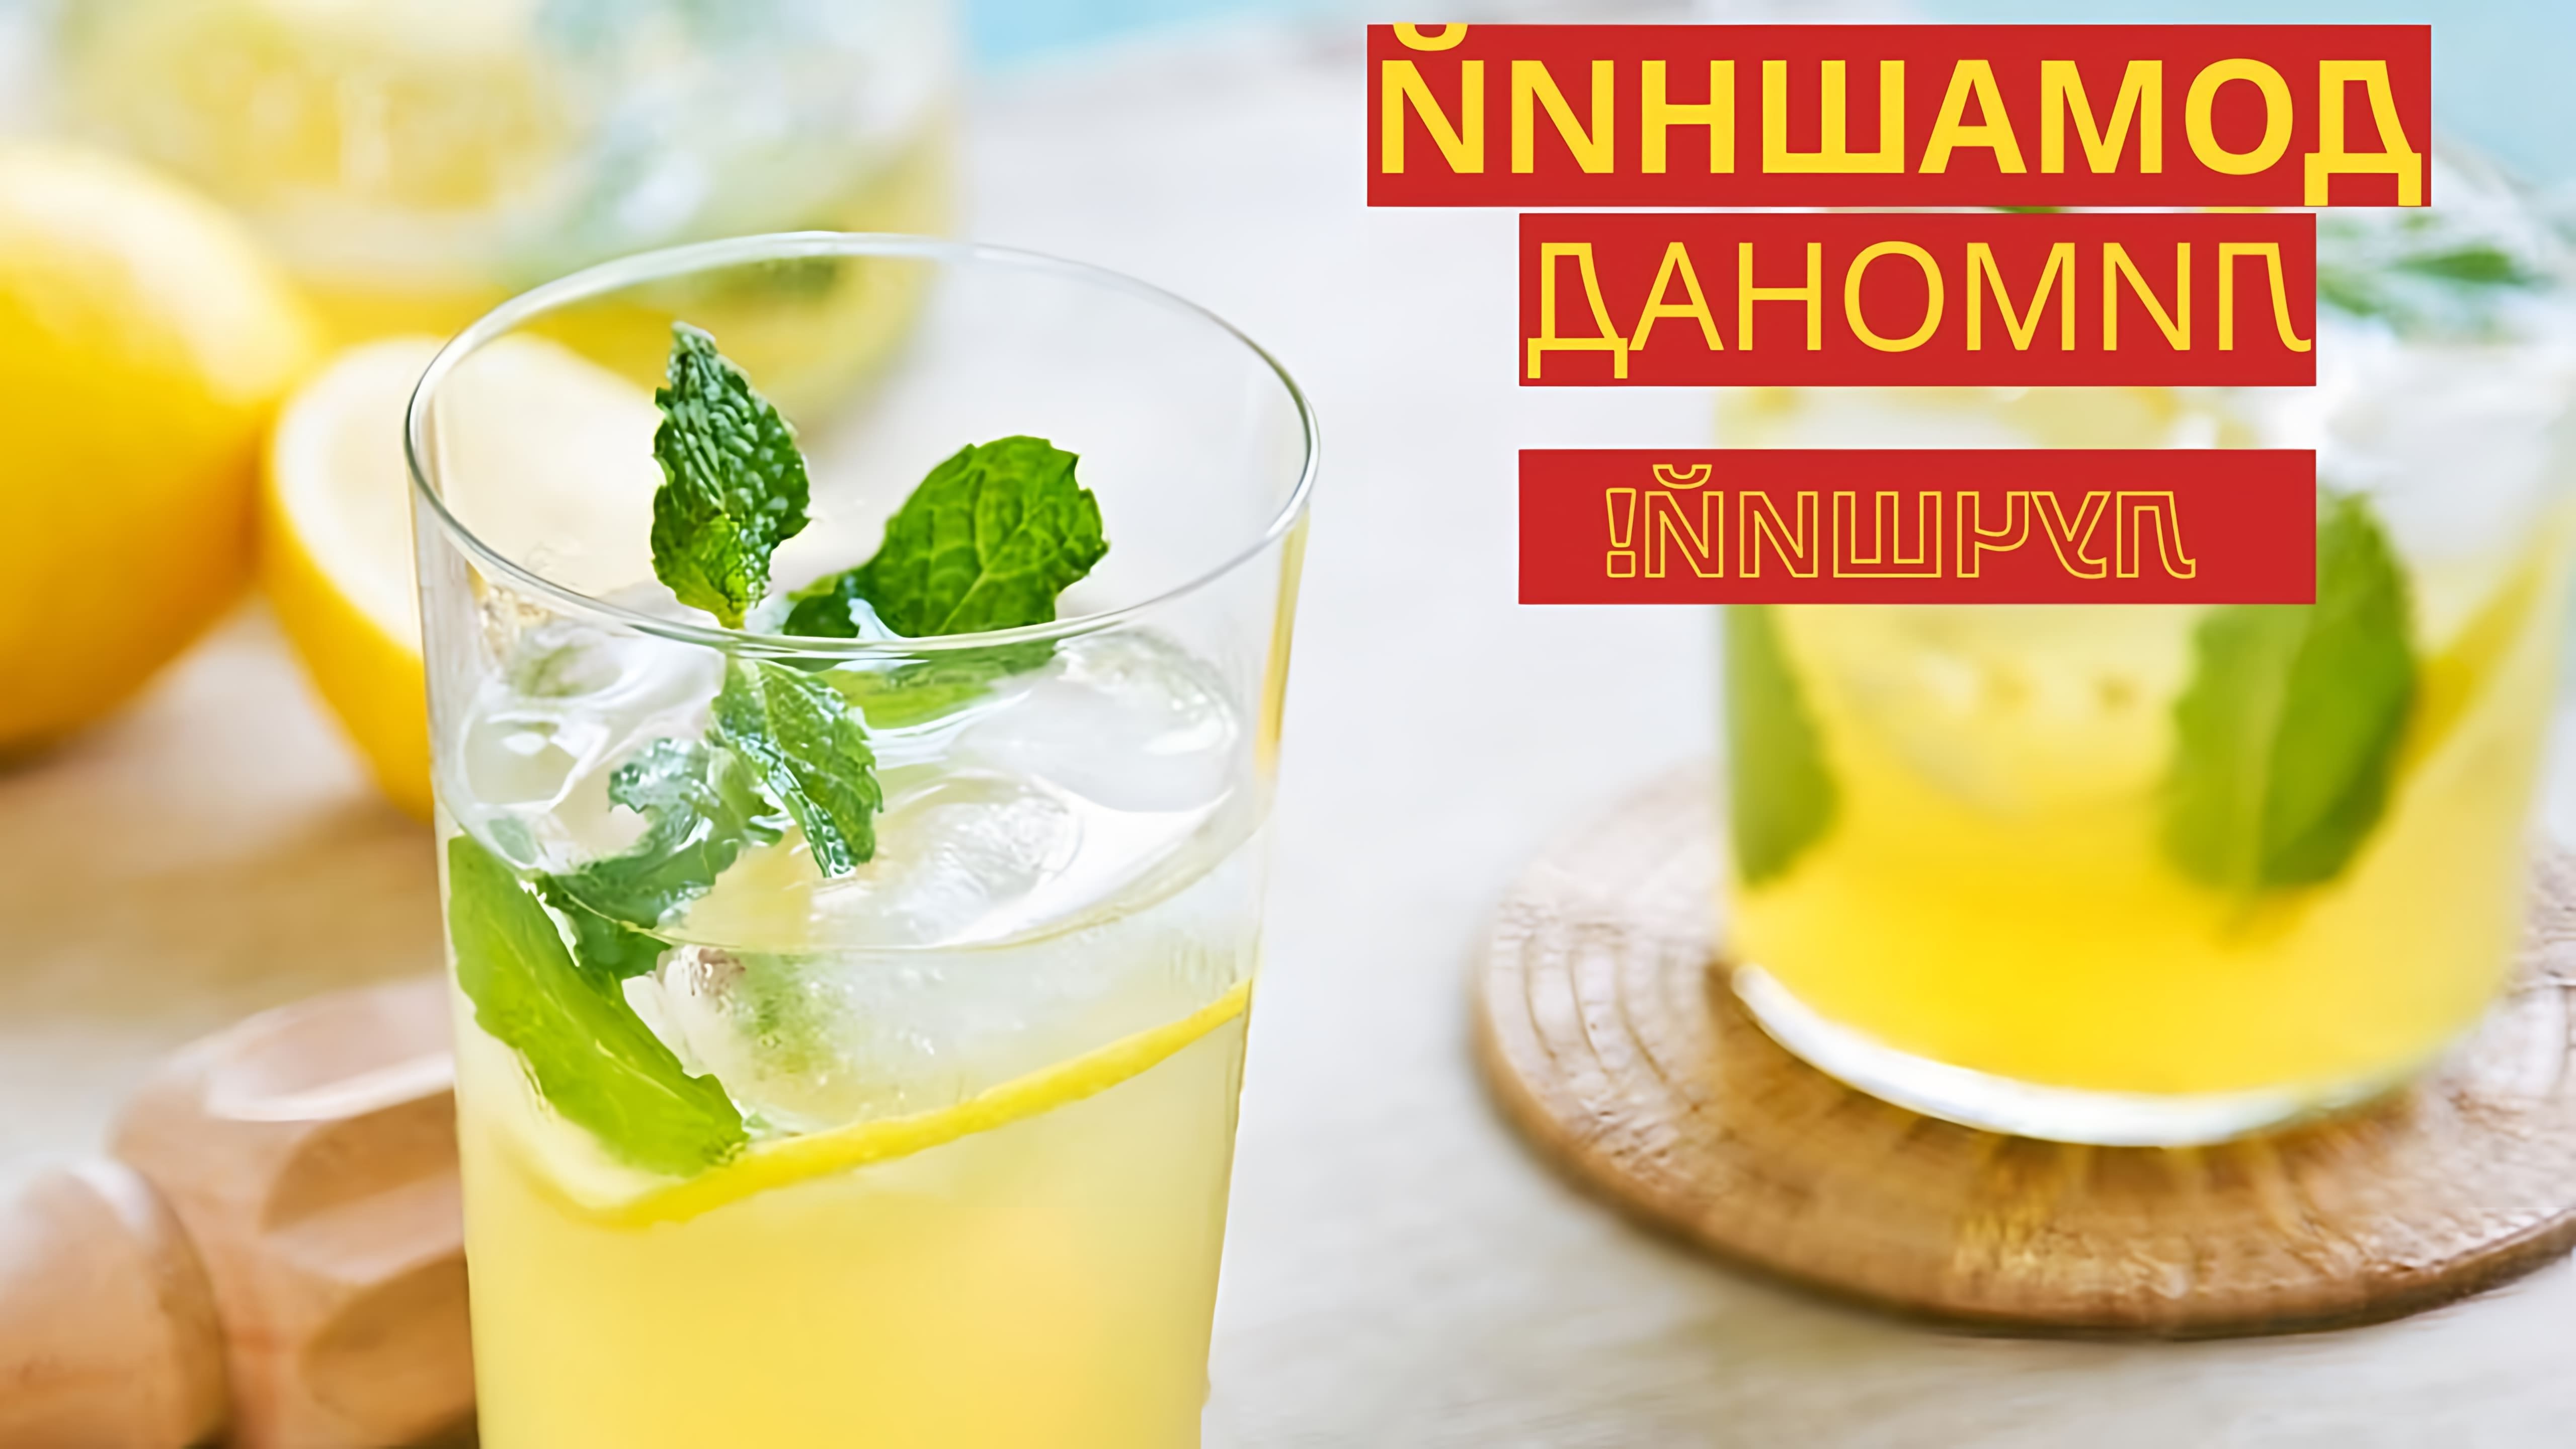 В этом видео-ролике будет представлен рецепт домашнего лимонада из лимонов